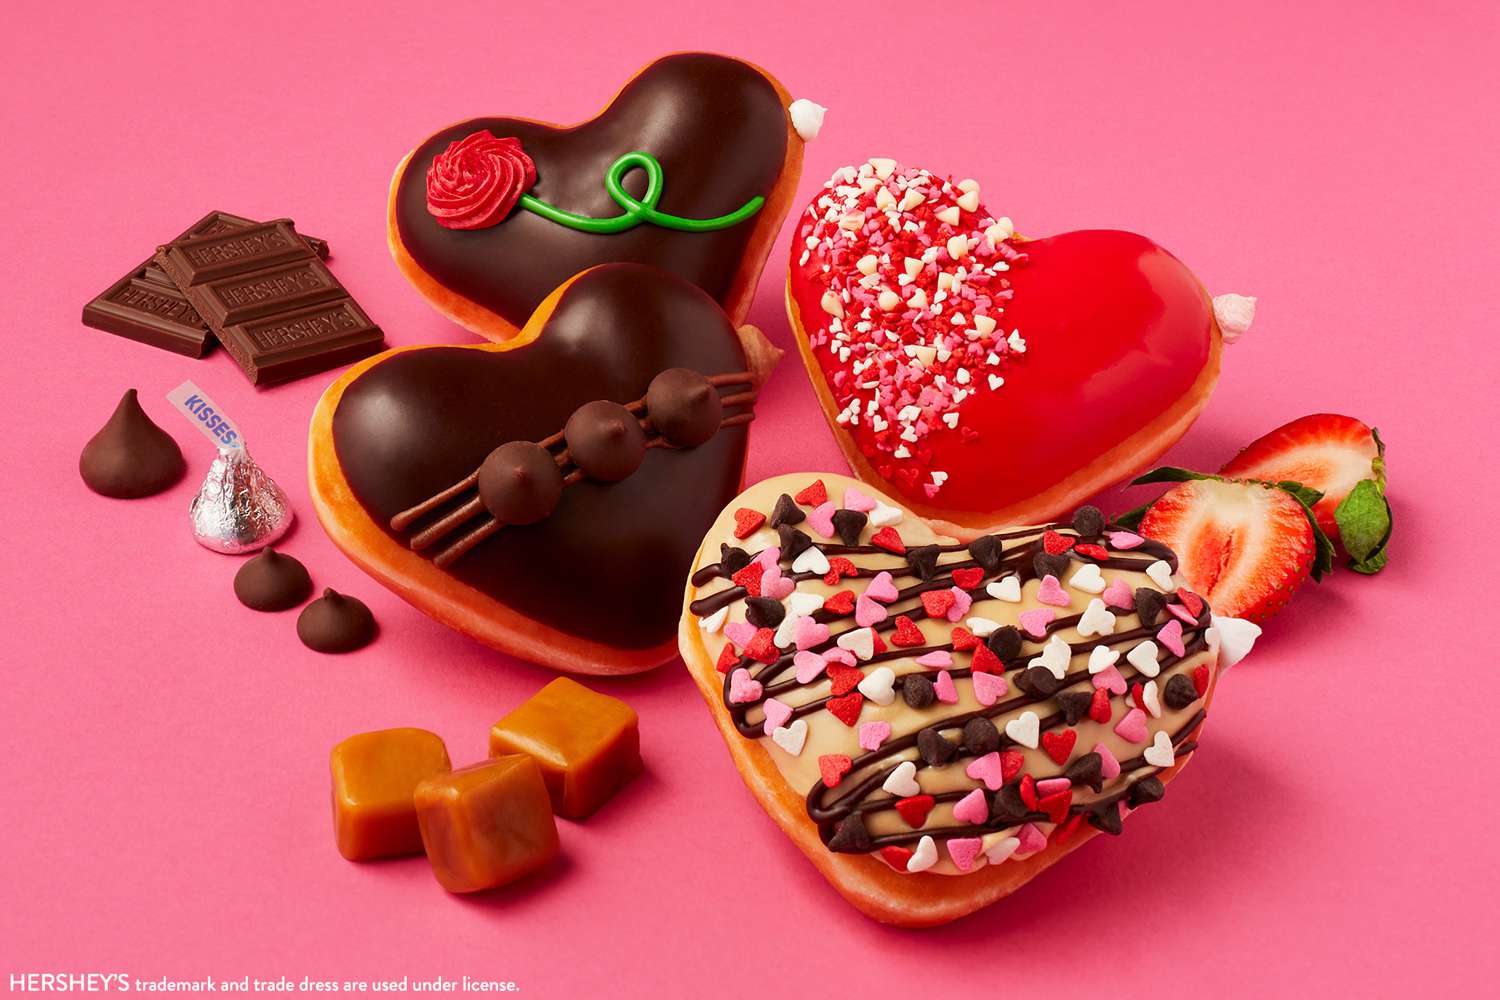 Krispy Kreme lança rosquinhas em forma de coração recheadas com chocolate Hershey's para o Dia dos Namorados